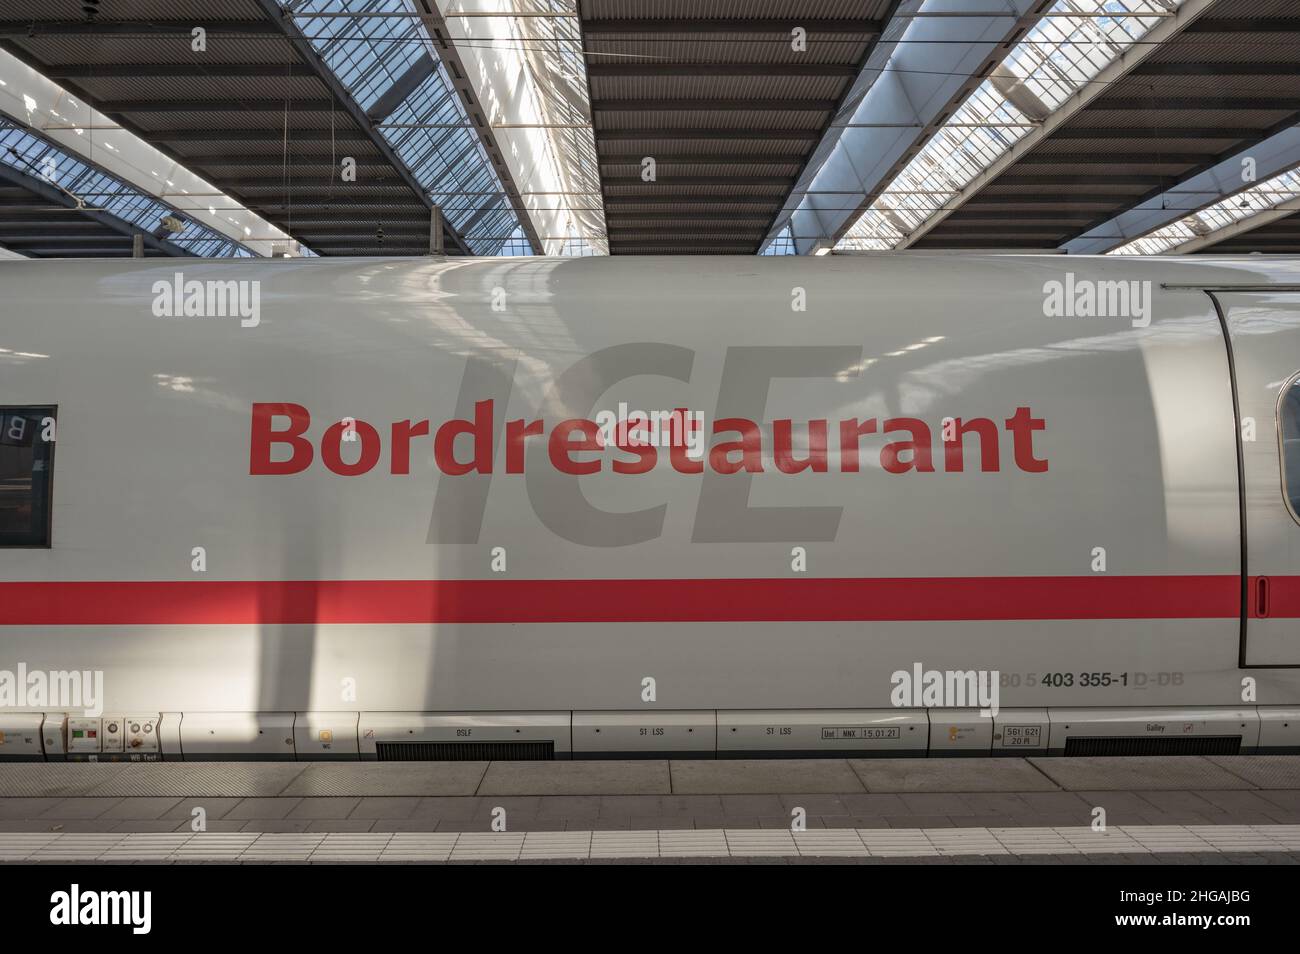 ICE der deutschen Bahn - bordresturant Stock Photo